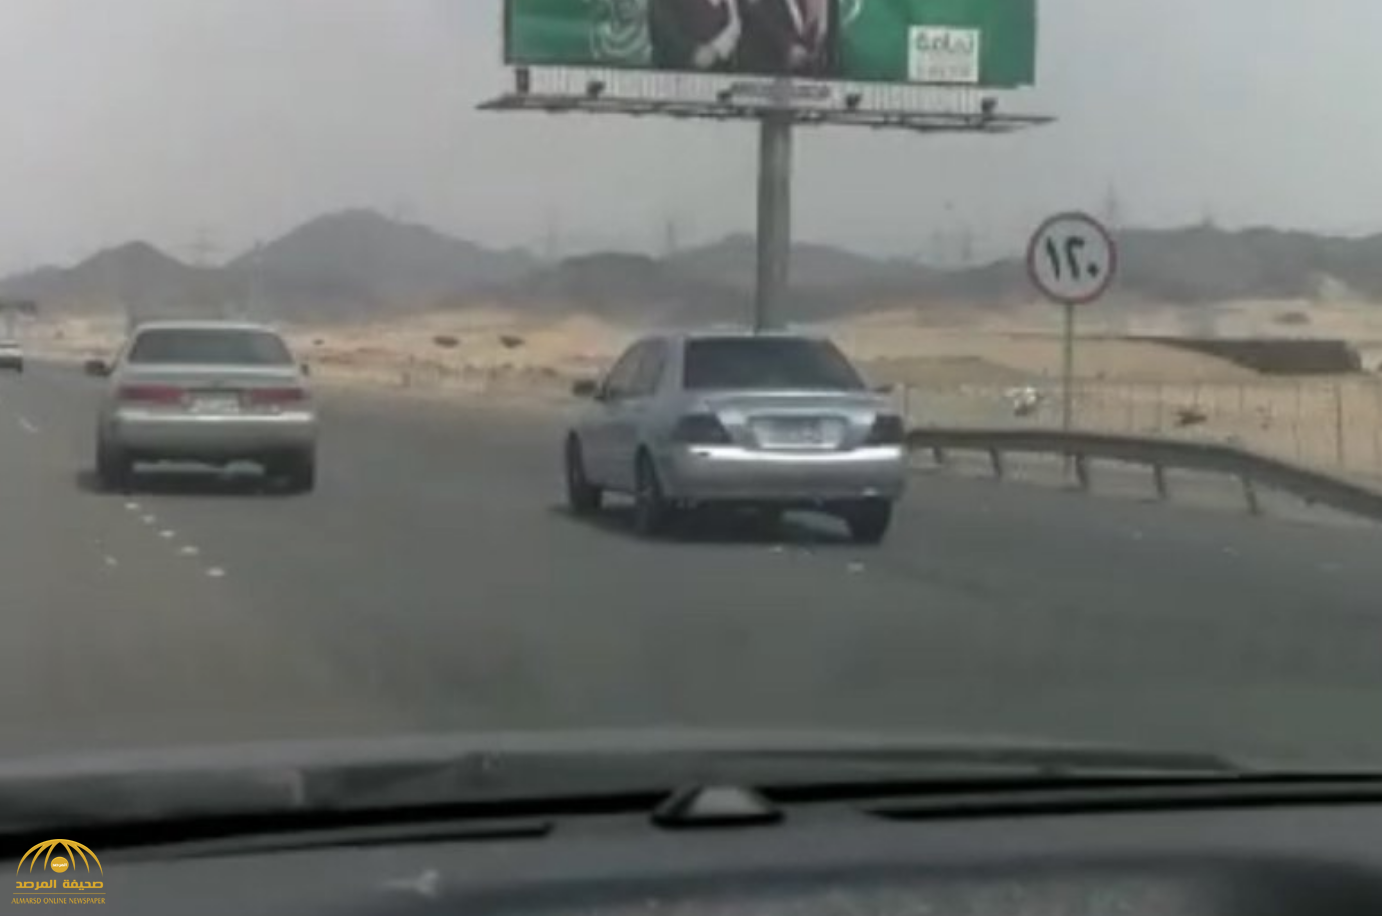 شاهد .. فيديو وثقه "مواطن" يكشف لغز  مطاردة ومراوغة بين سيارتين على طريق جدة مكة السريع!